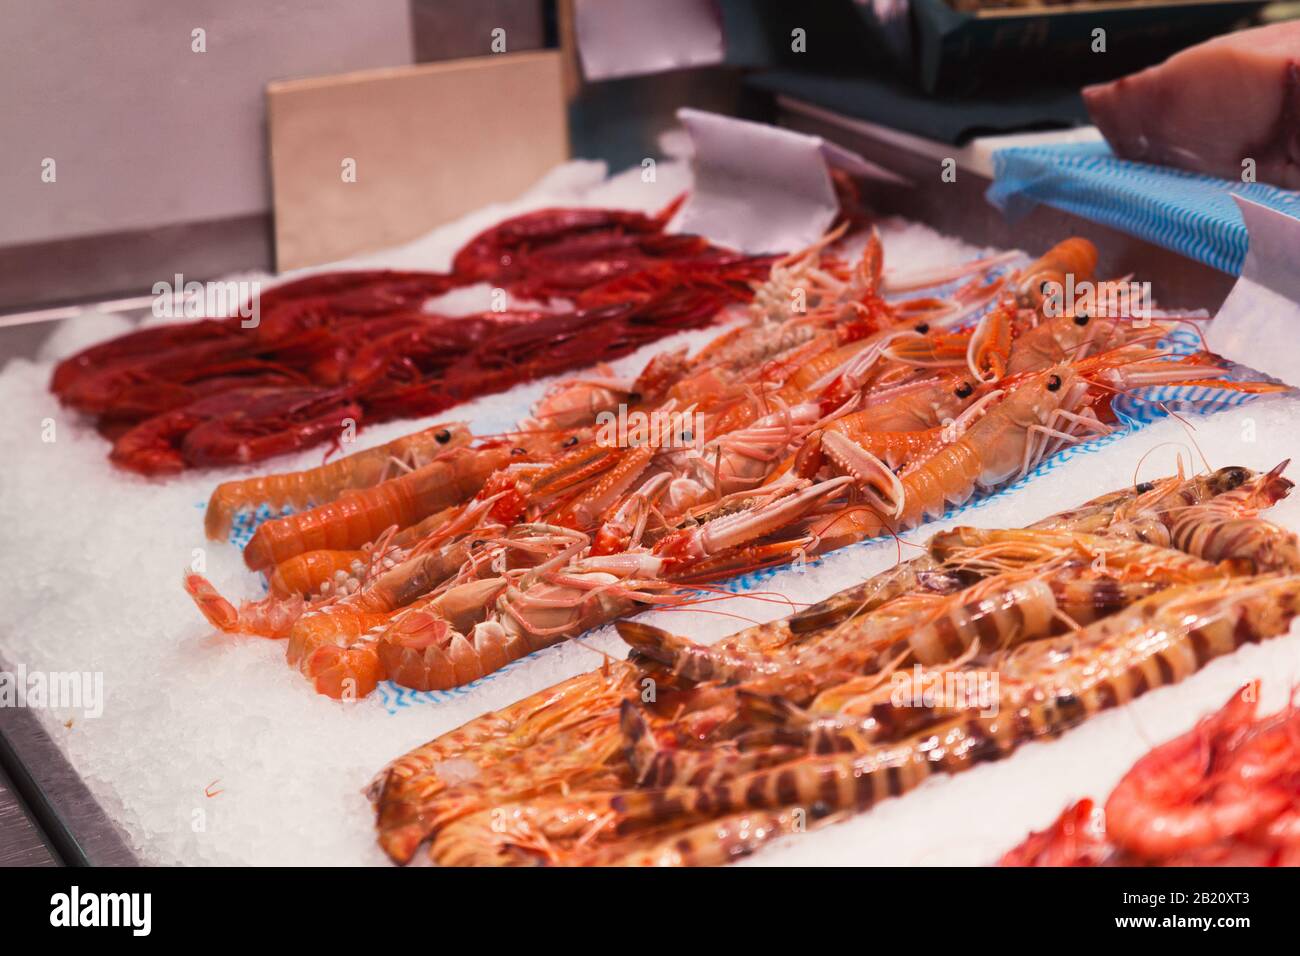 Photo d'un marché plein de produits marins comme des crustacés Banque D'Images